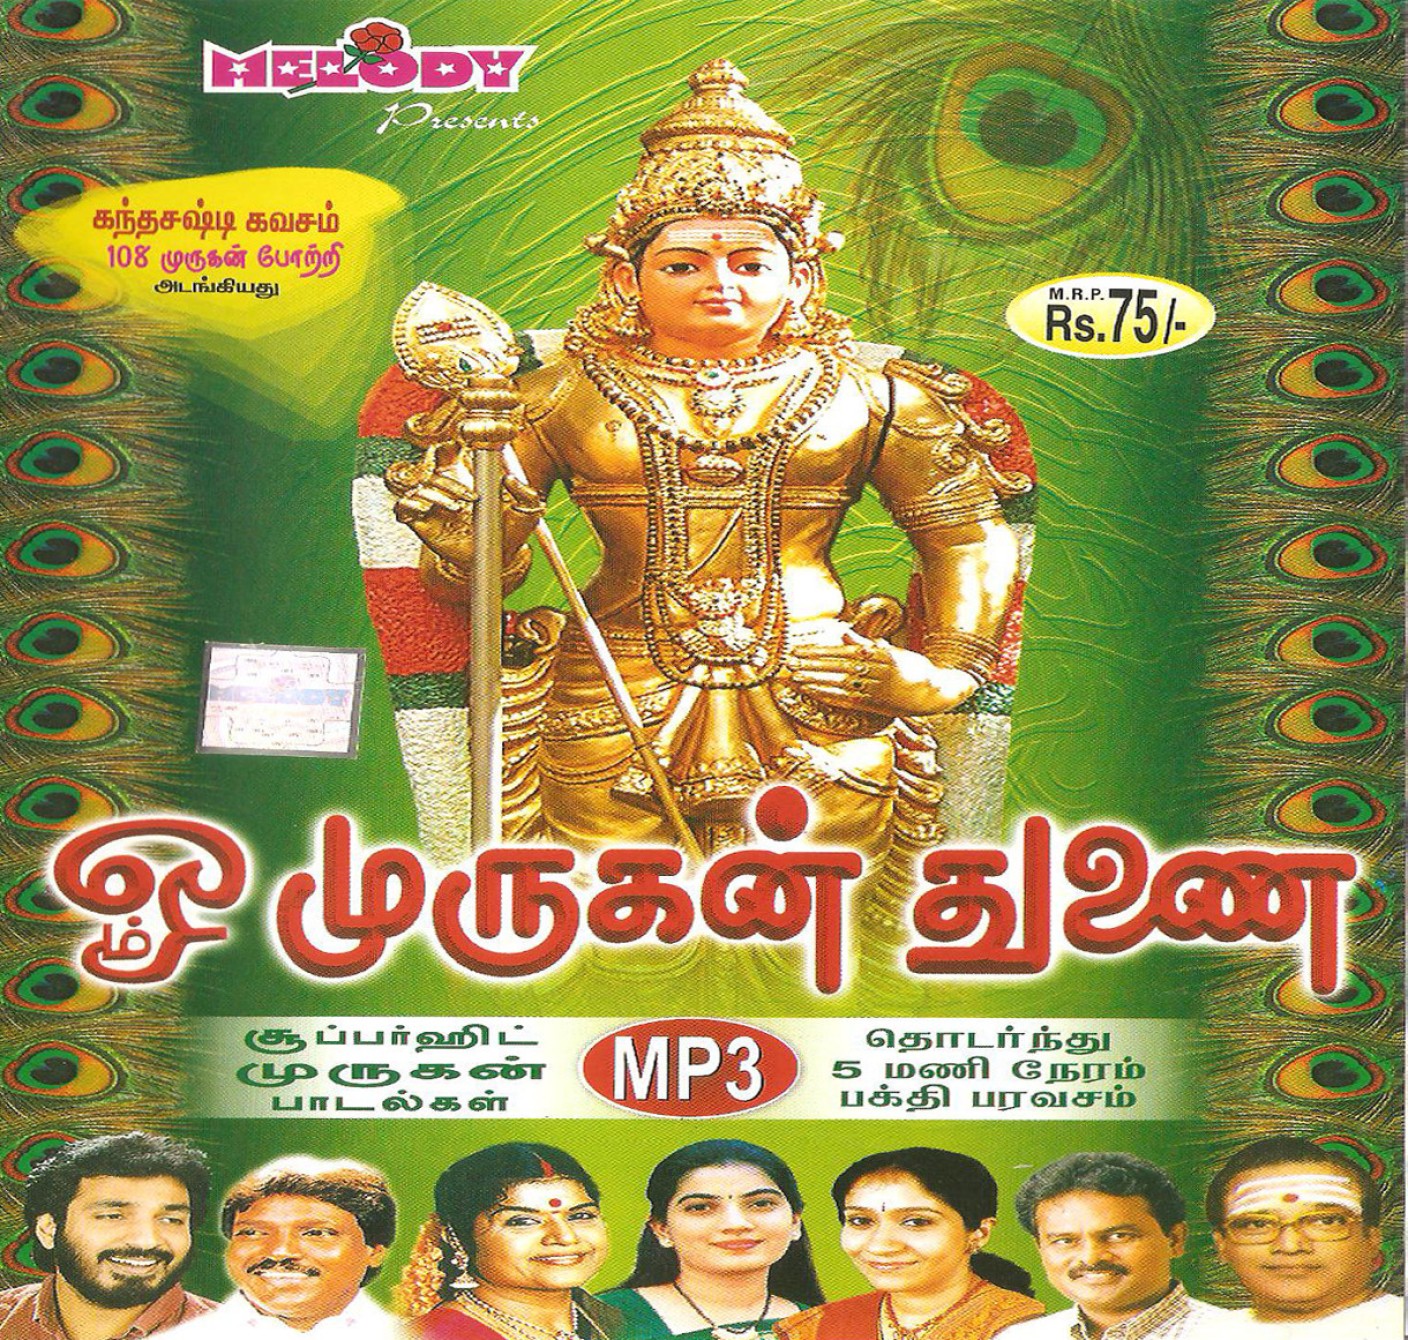 muruga muruga om muruga song lyrics in tamil